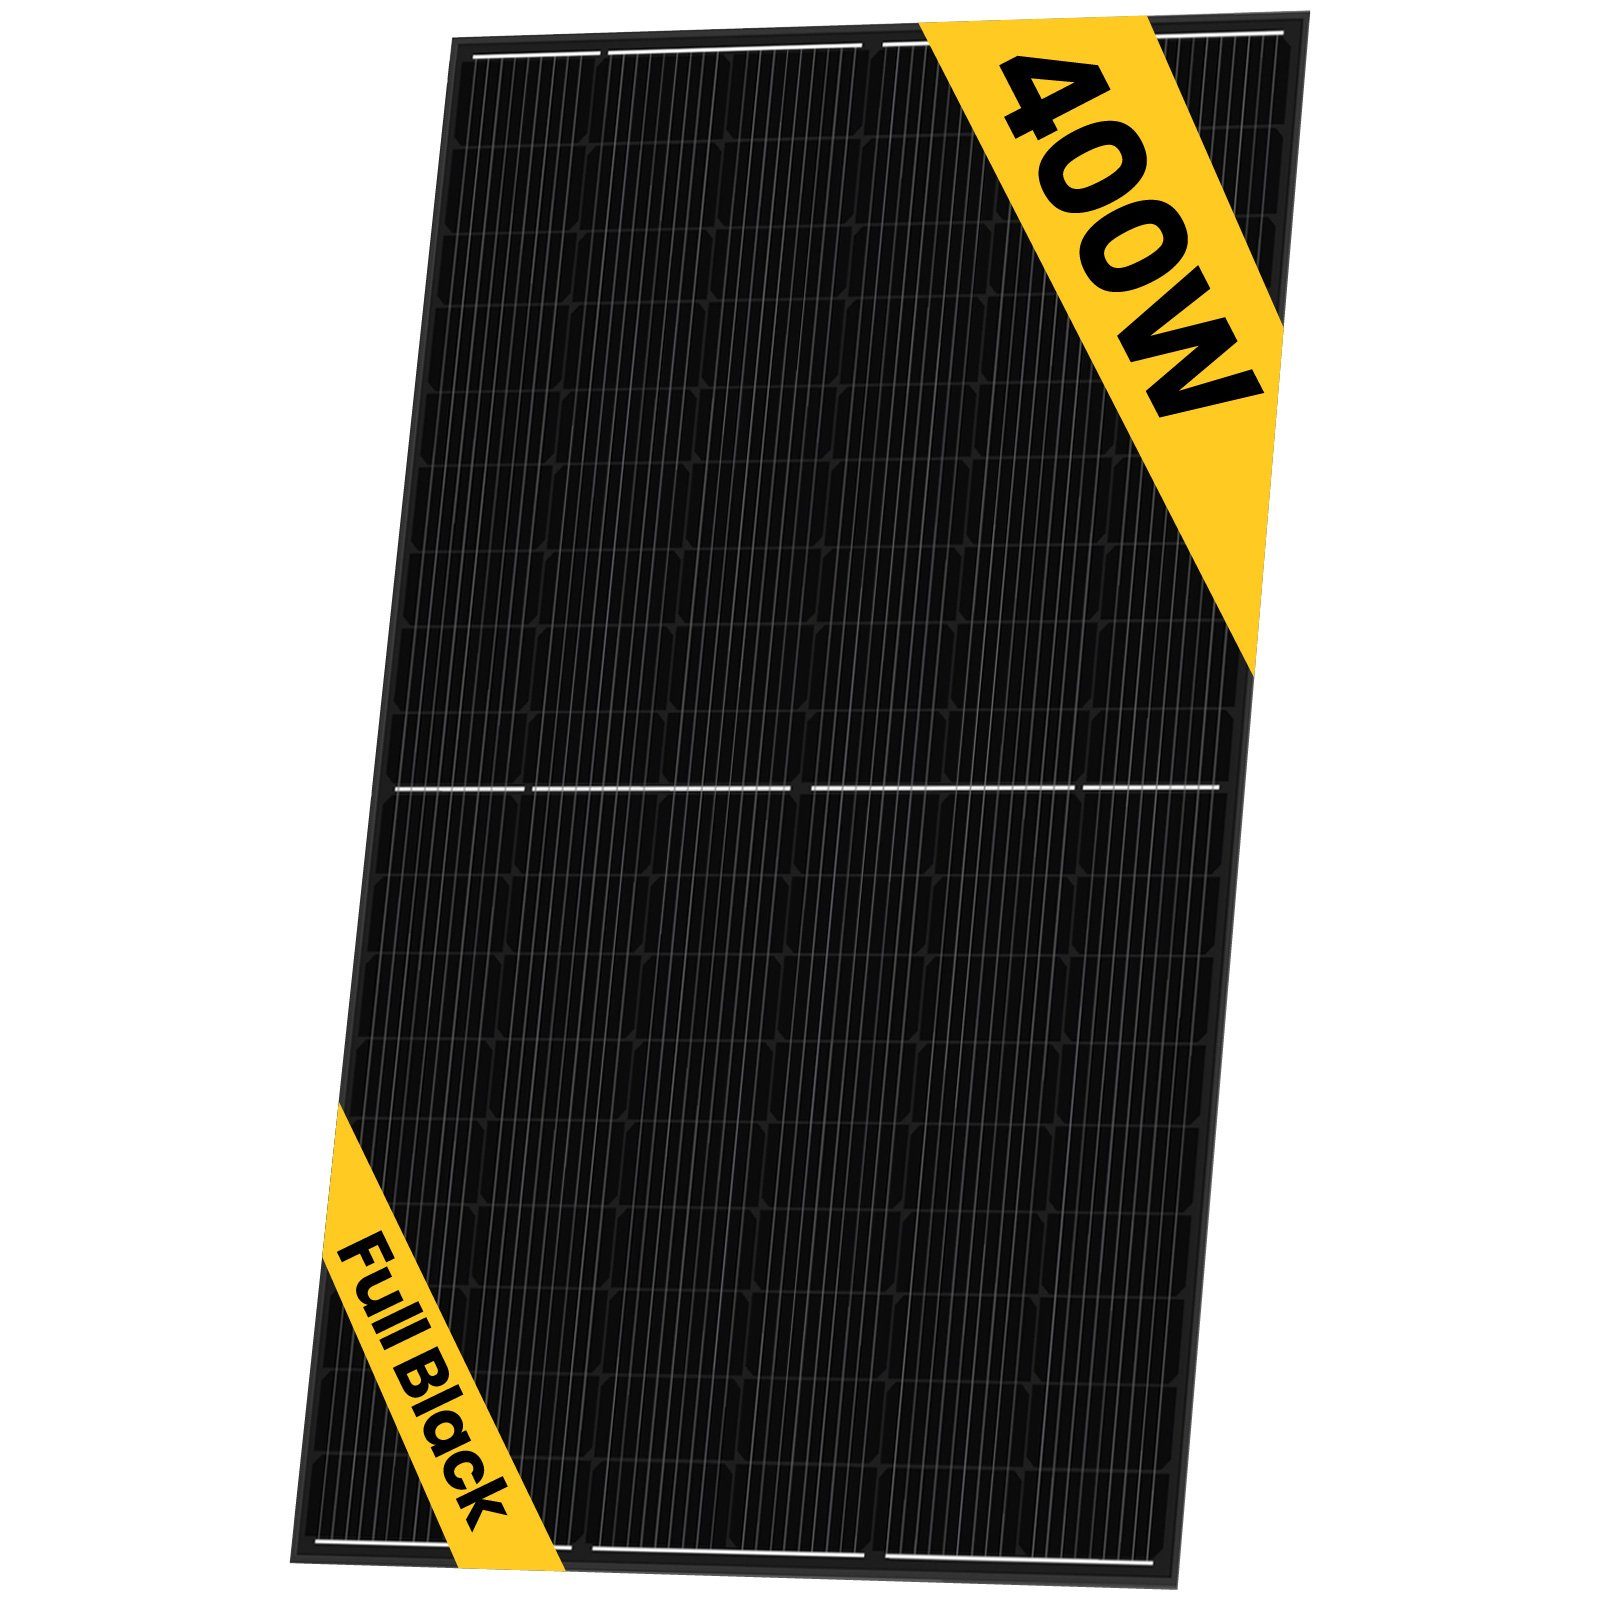 Campergold Solaranlage 10x 400W Sunpro Photovoltaik Hieff monokristalline Schwarz Solarmodul, Wasserdichtigkeitsklasse IP68, Schwarz (Solarpanel)